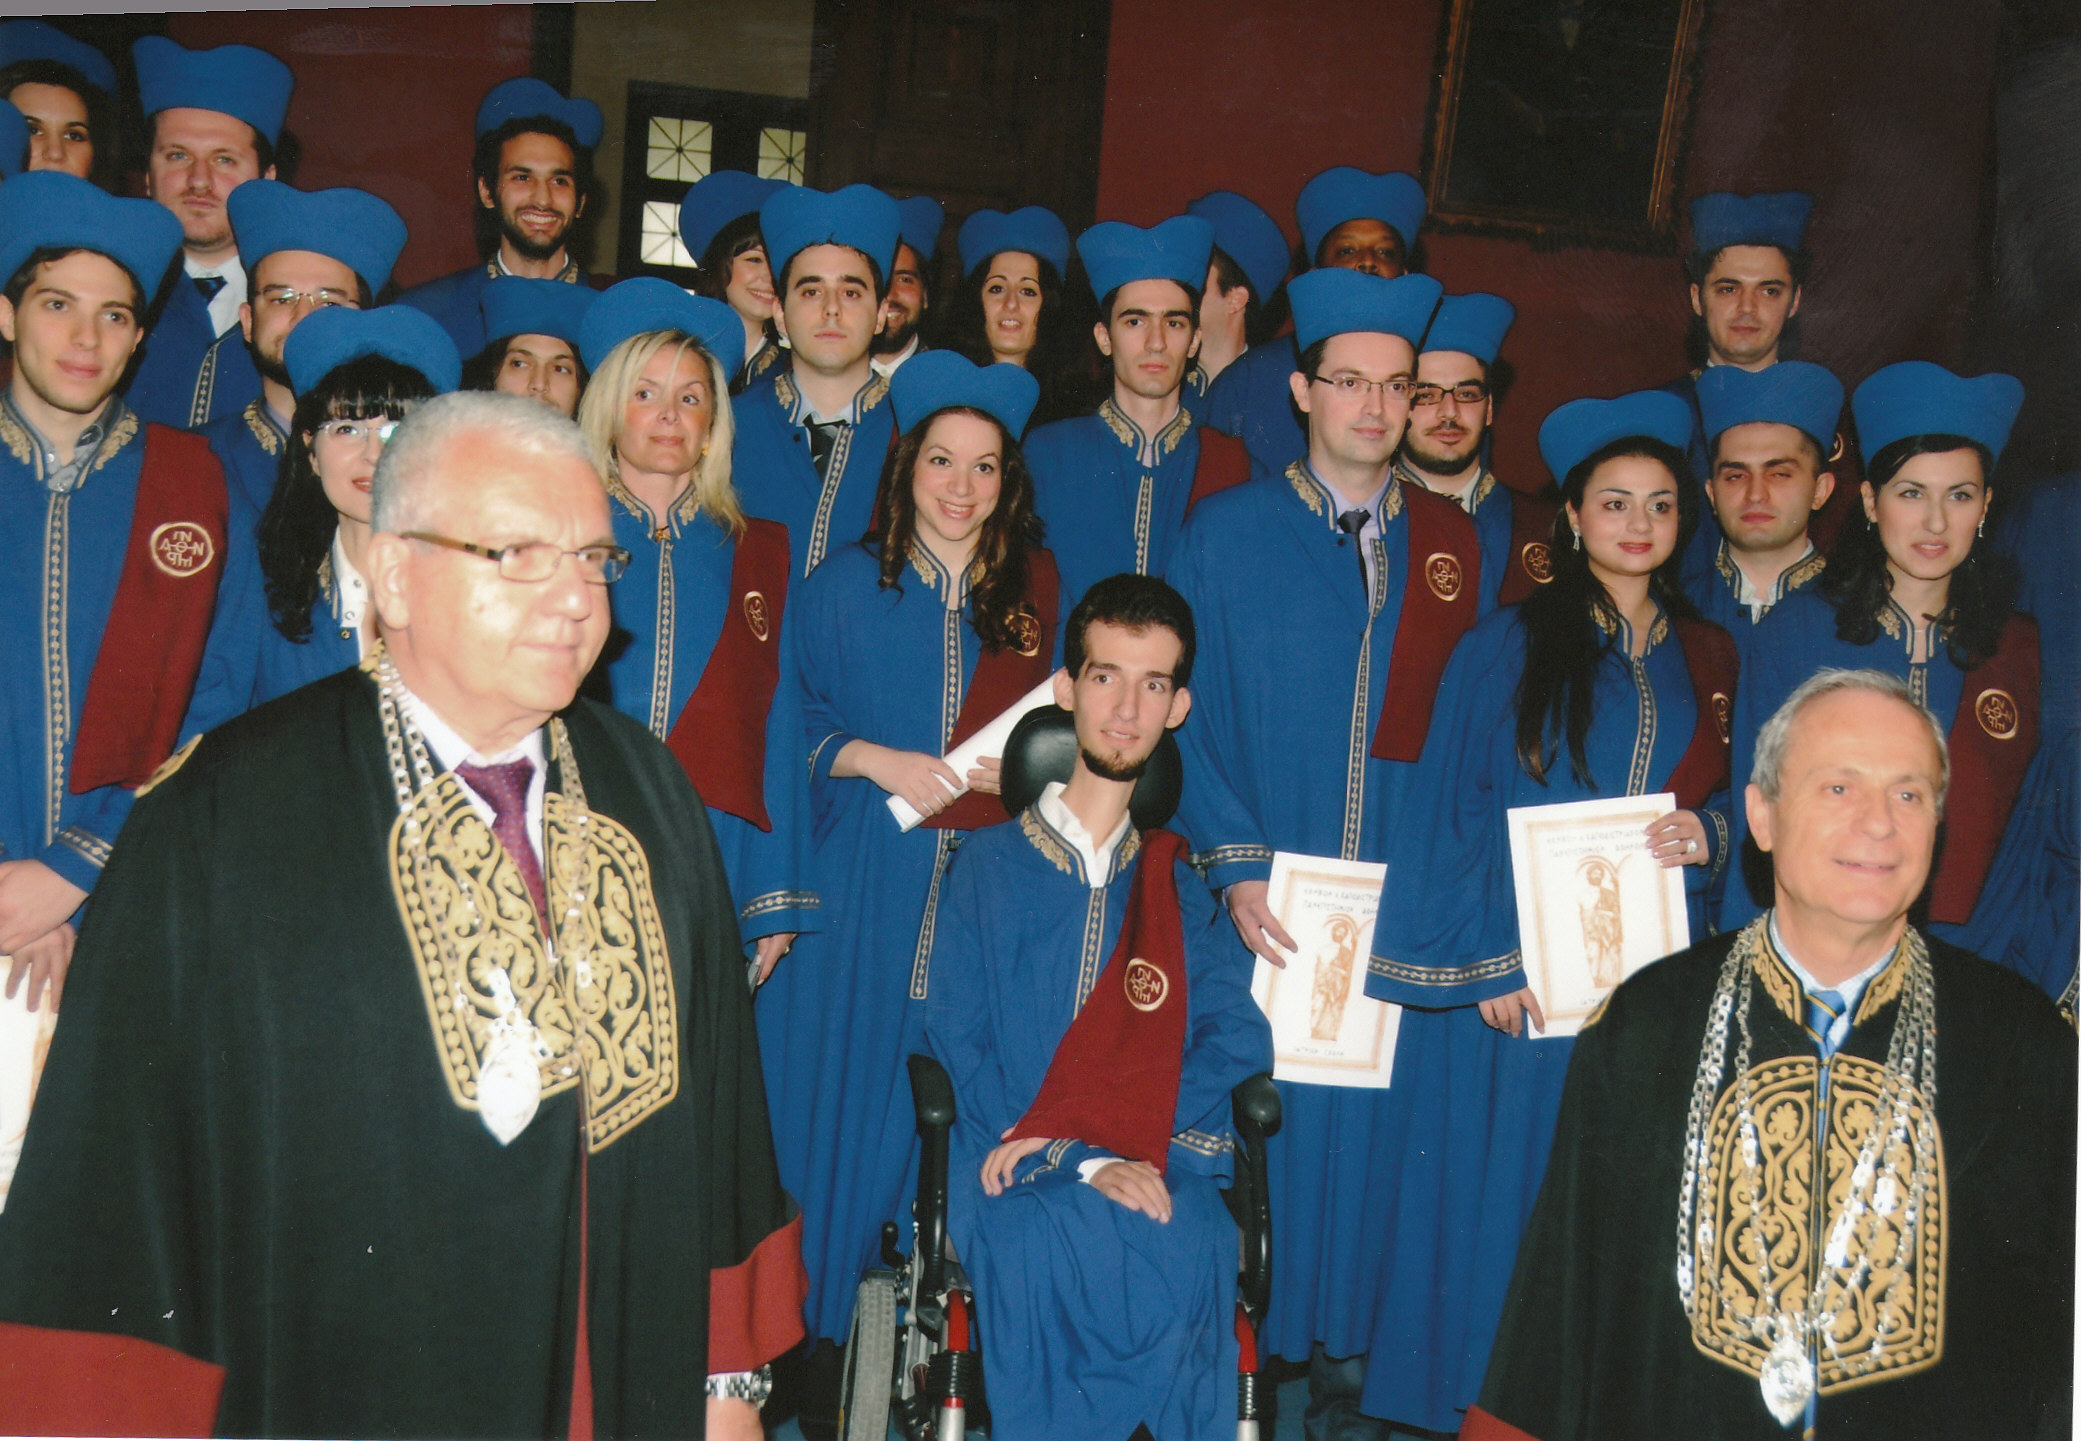 Ο Στέλιος Κυμπουρόπουλος ορκίζεται απόφοιτος της Ιατρικής του Πανεπιστημίου ΑΘΗΝΏΝ, 2010